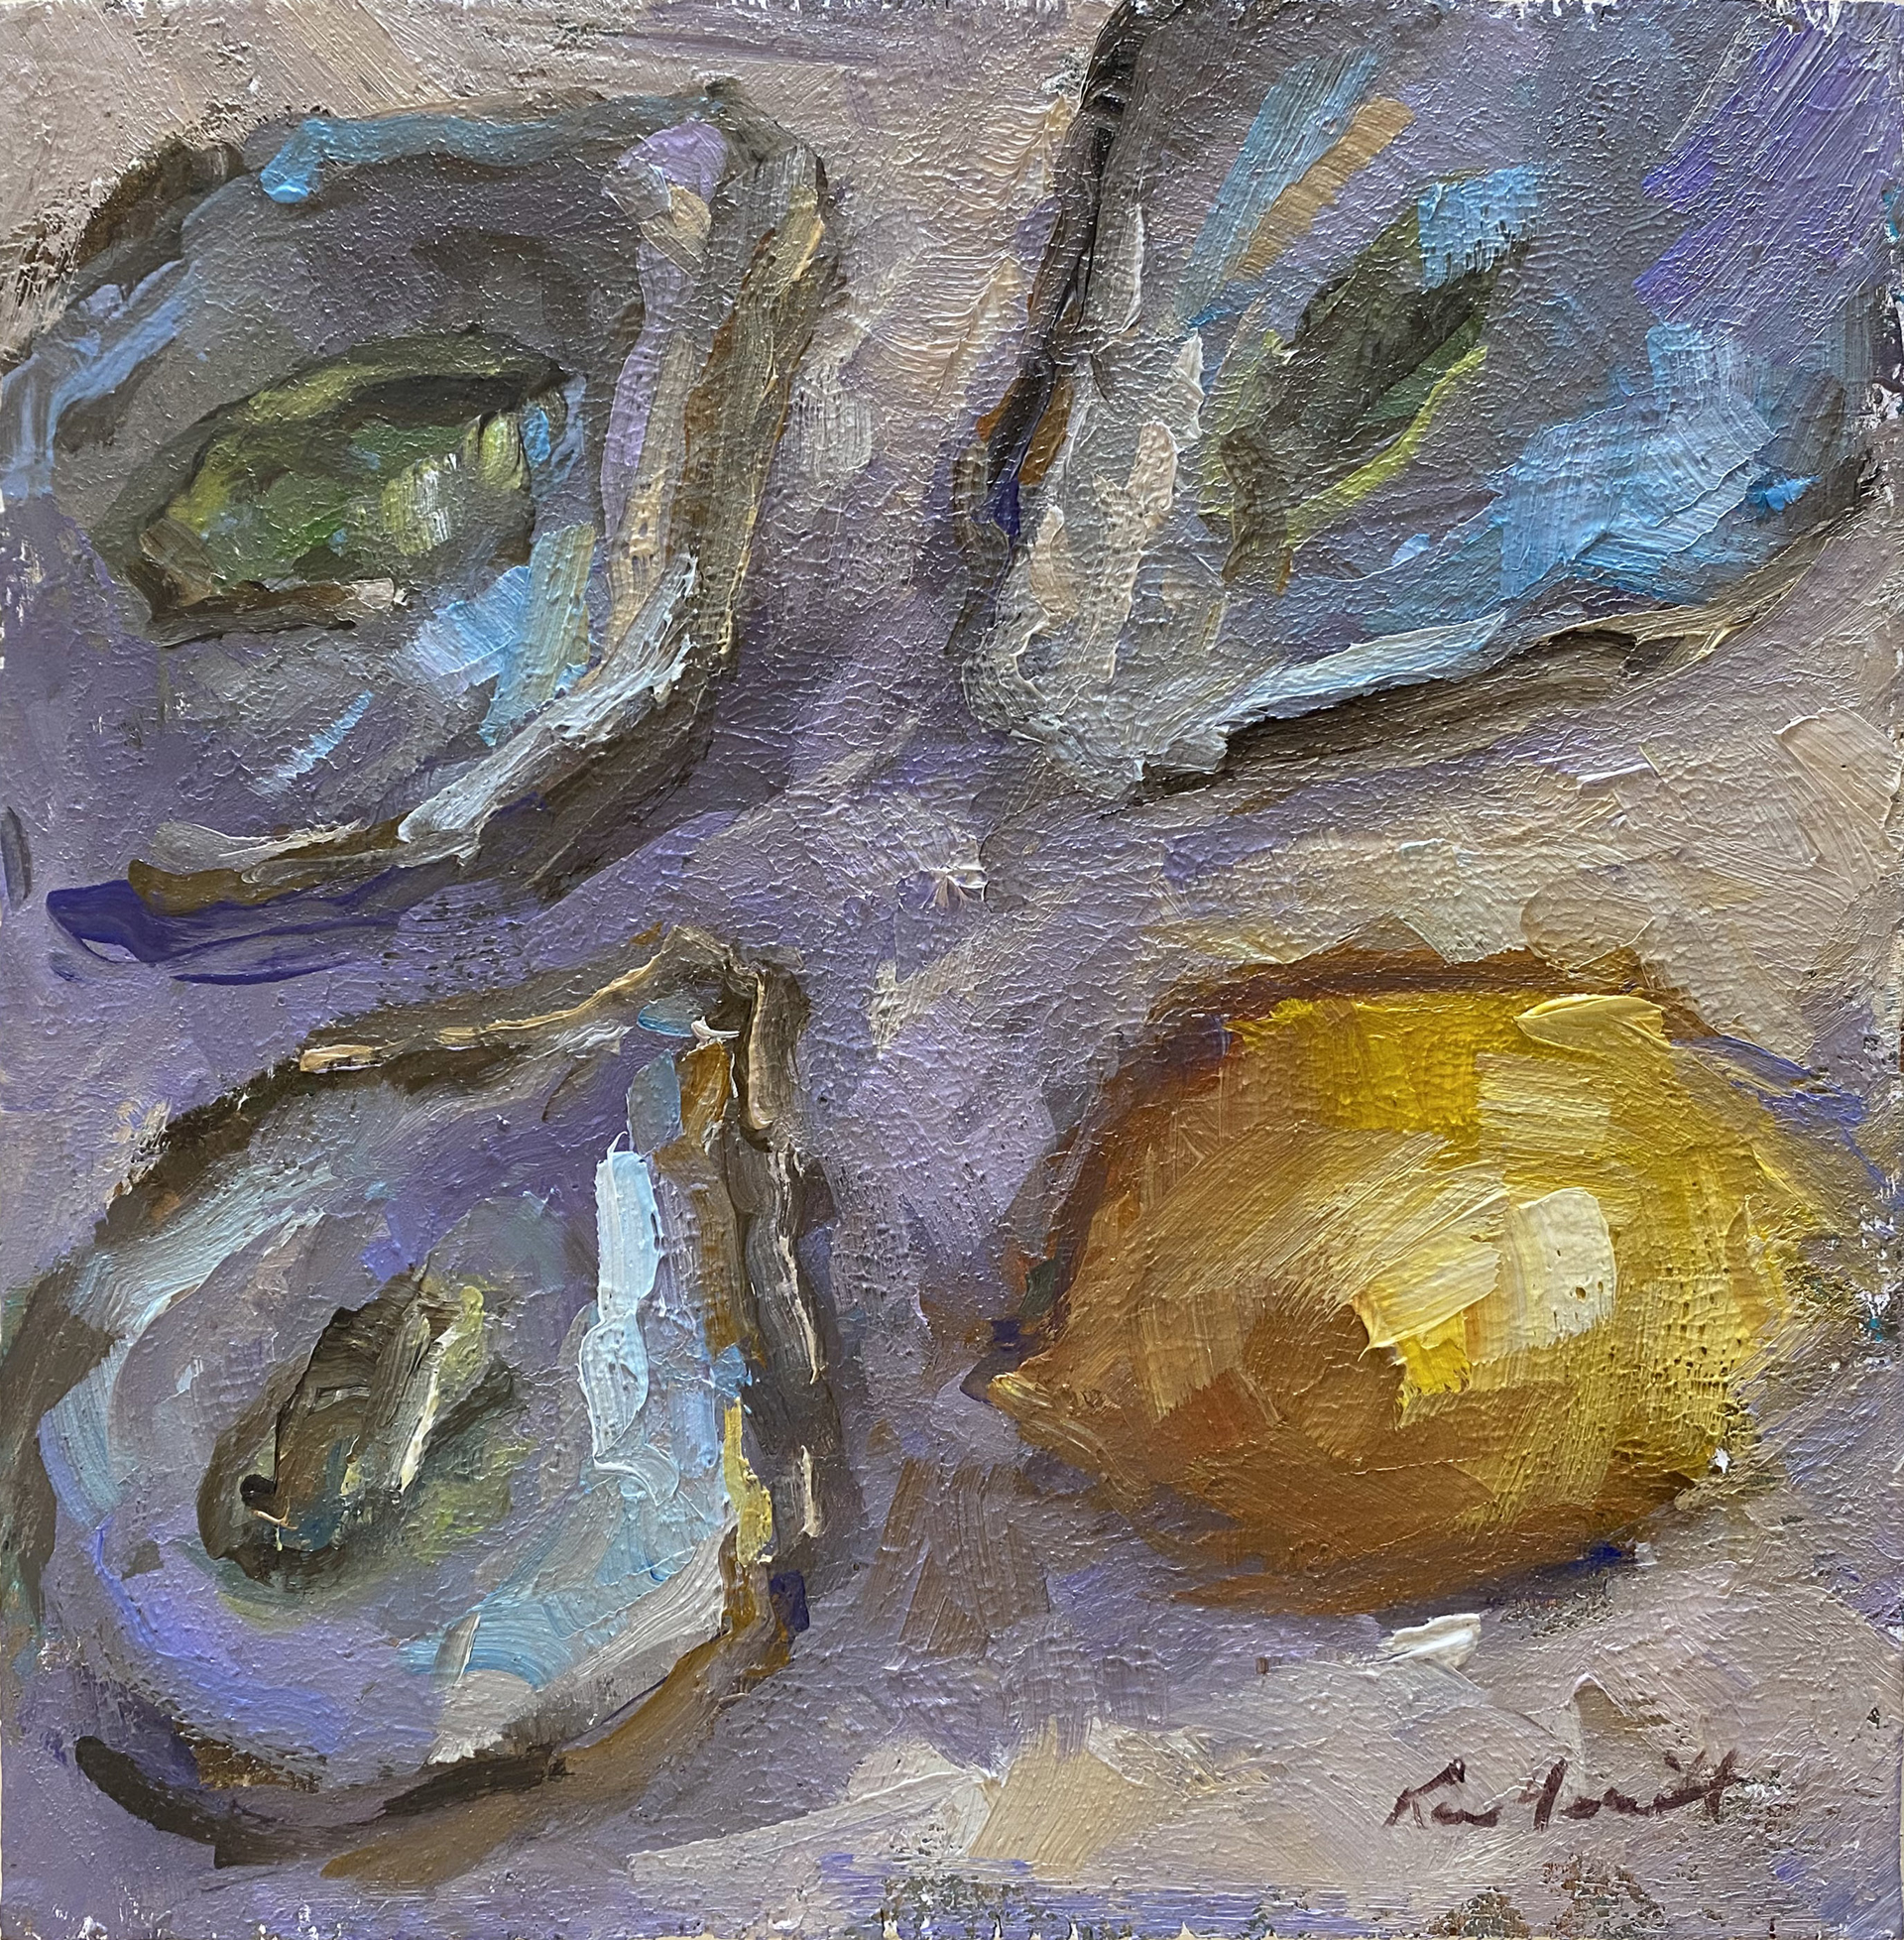 An Oyster Bash by Karen Hewitt Hagan